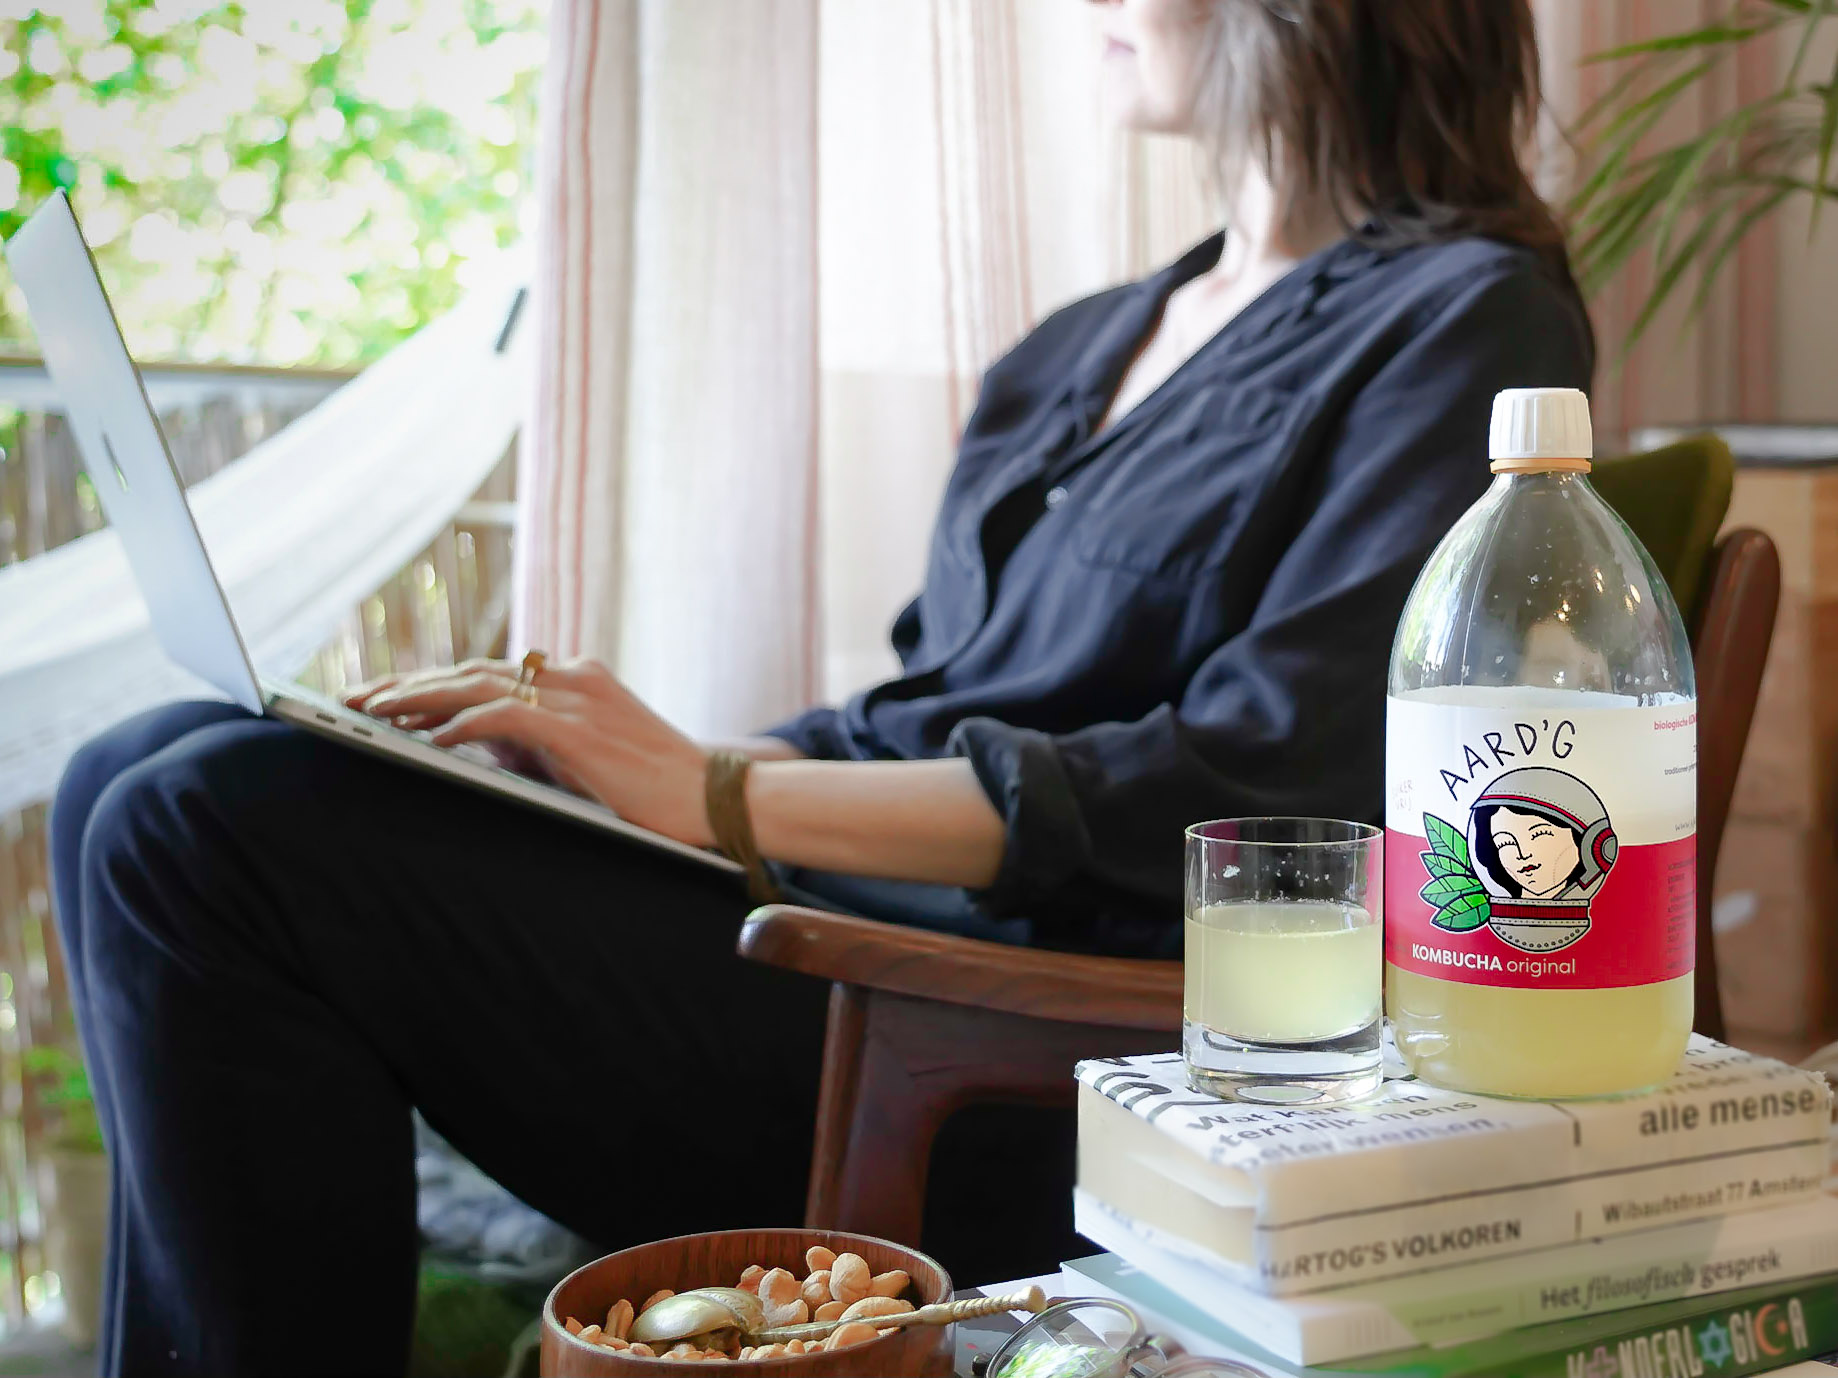 Een fles Aard'g Kombucha Original op een stapel boeken met op de achtergrond een vrouw die naar buiten kijkt met een laptop op haar schoot.